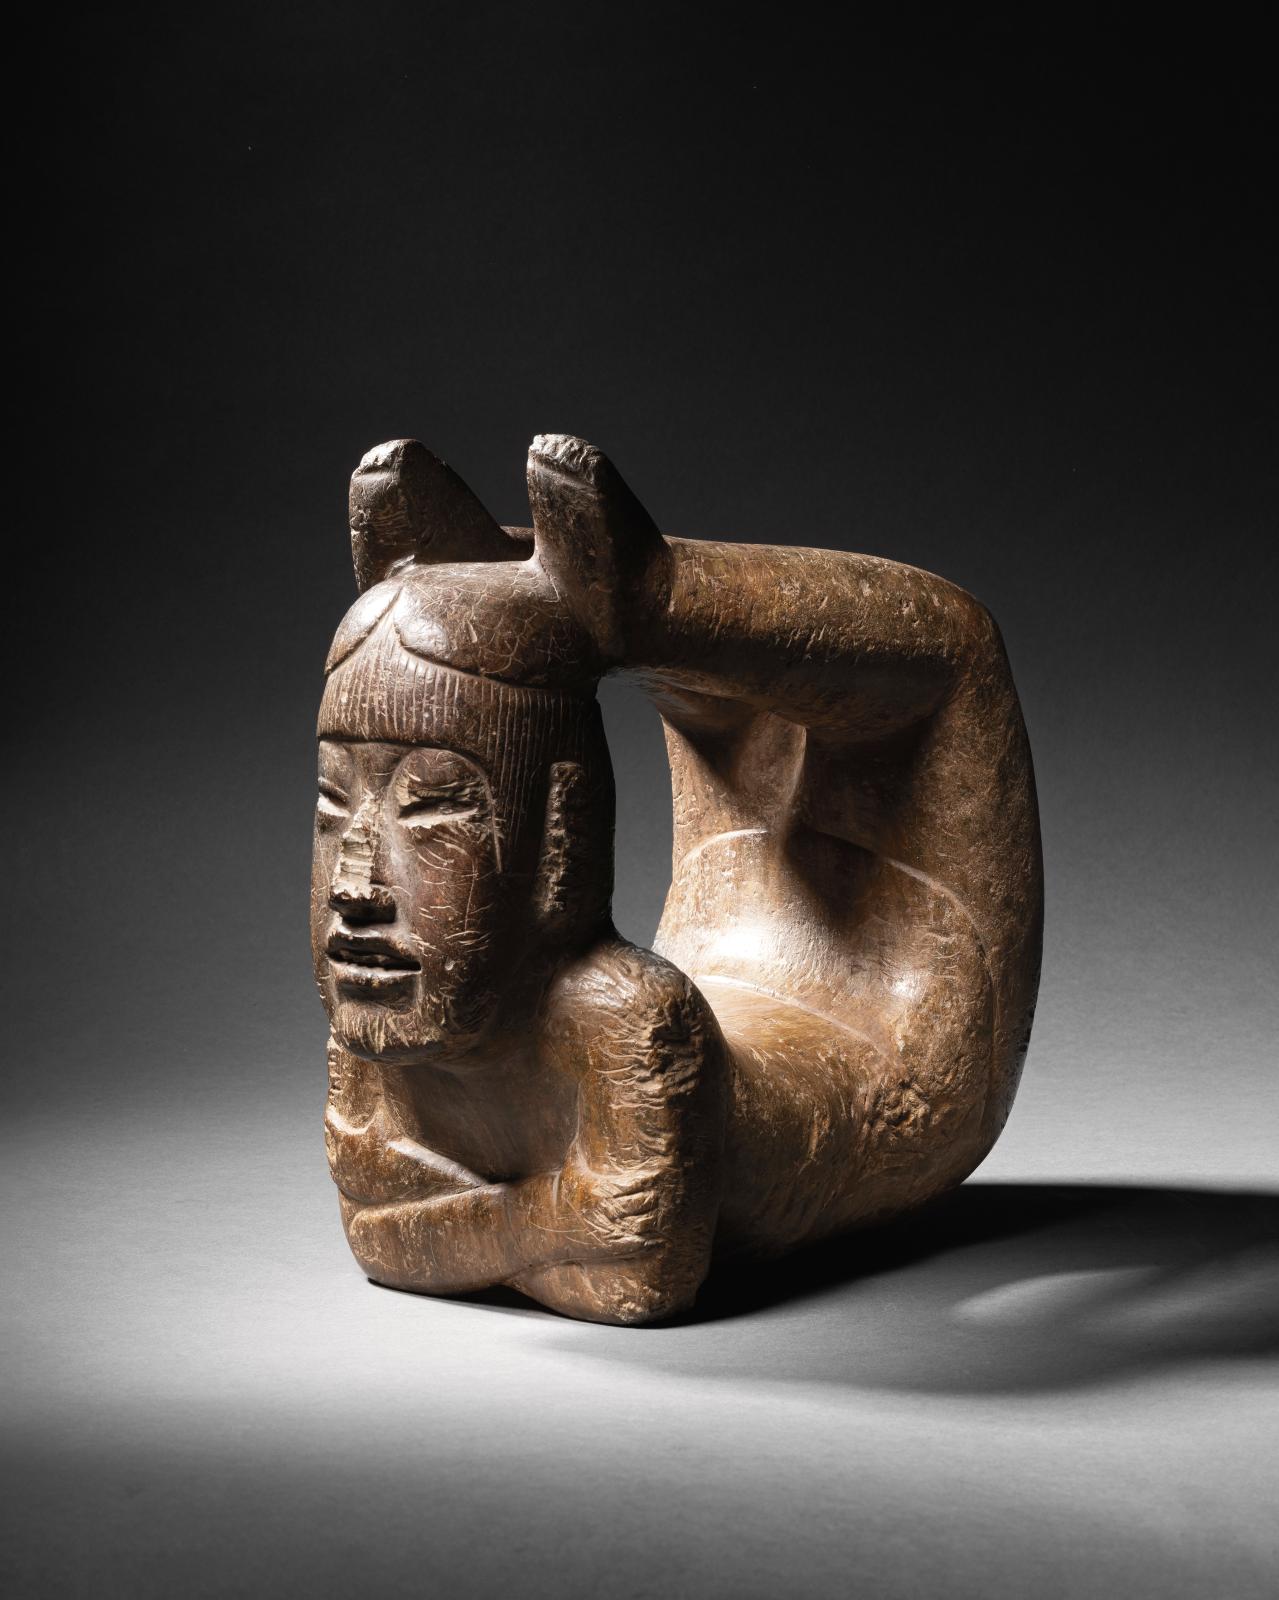 Avec cet acrobate olmèque, l’art précolombien se met en quatre